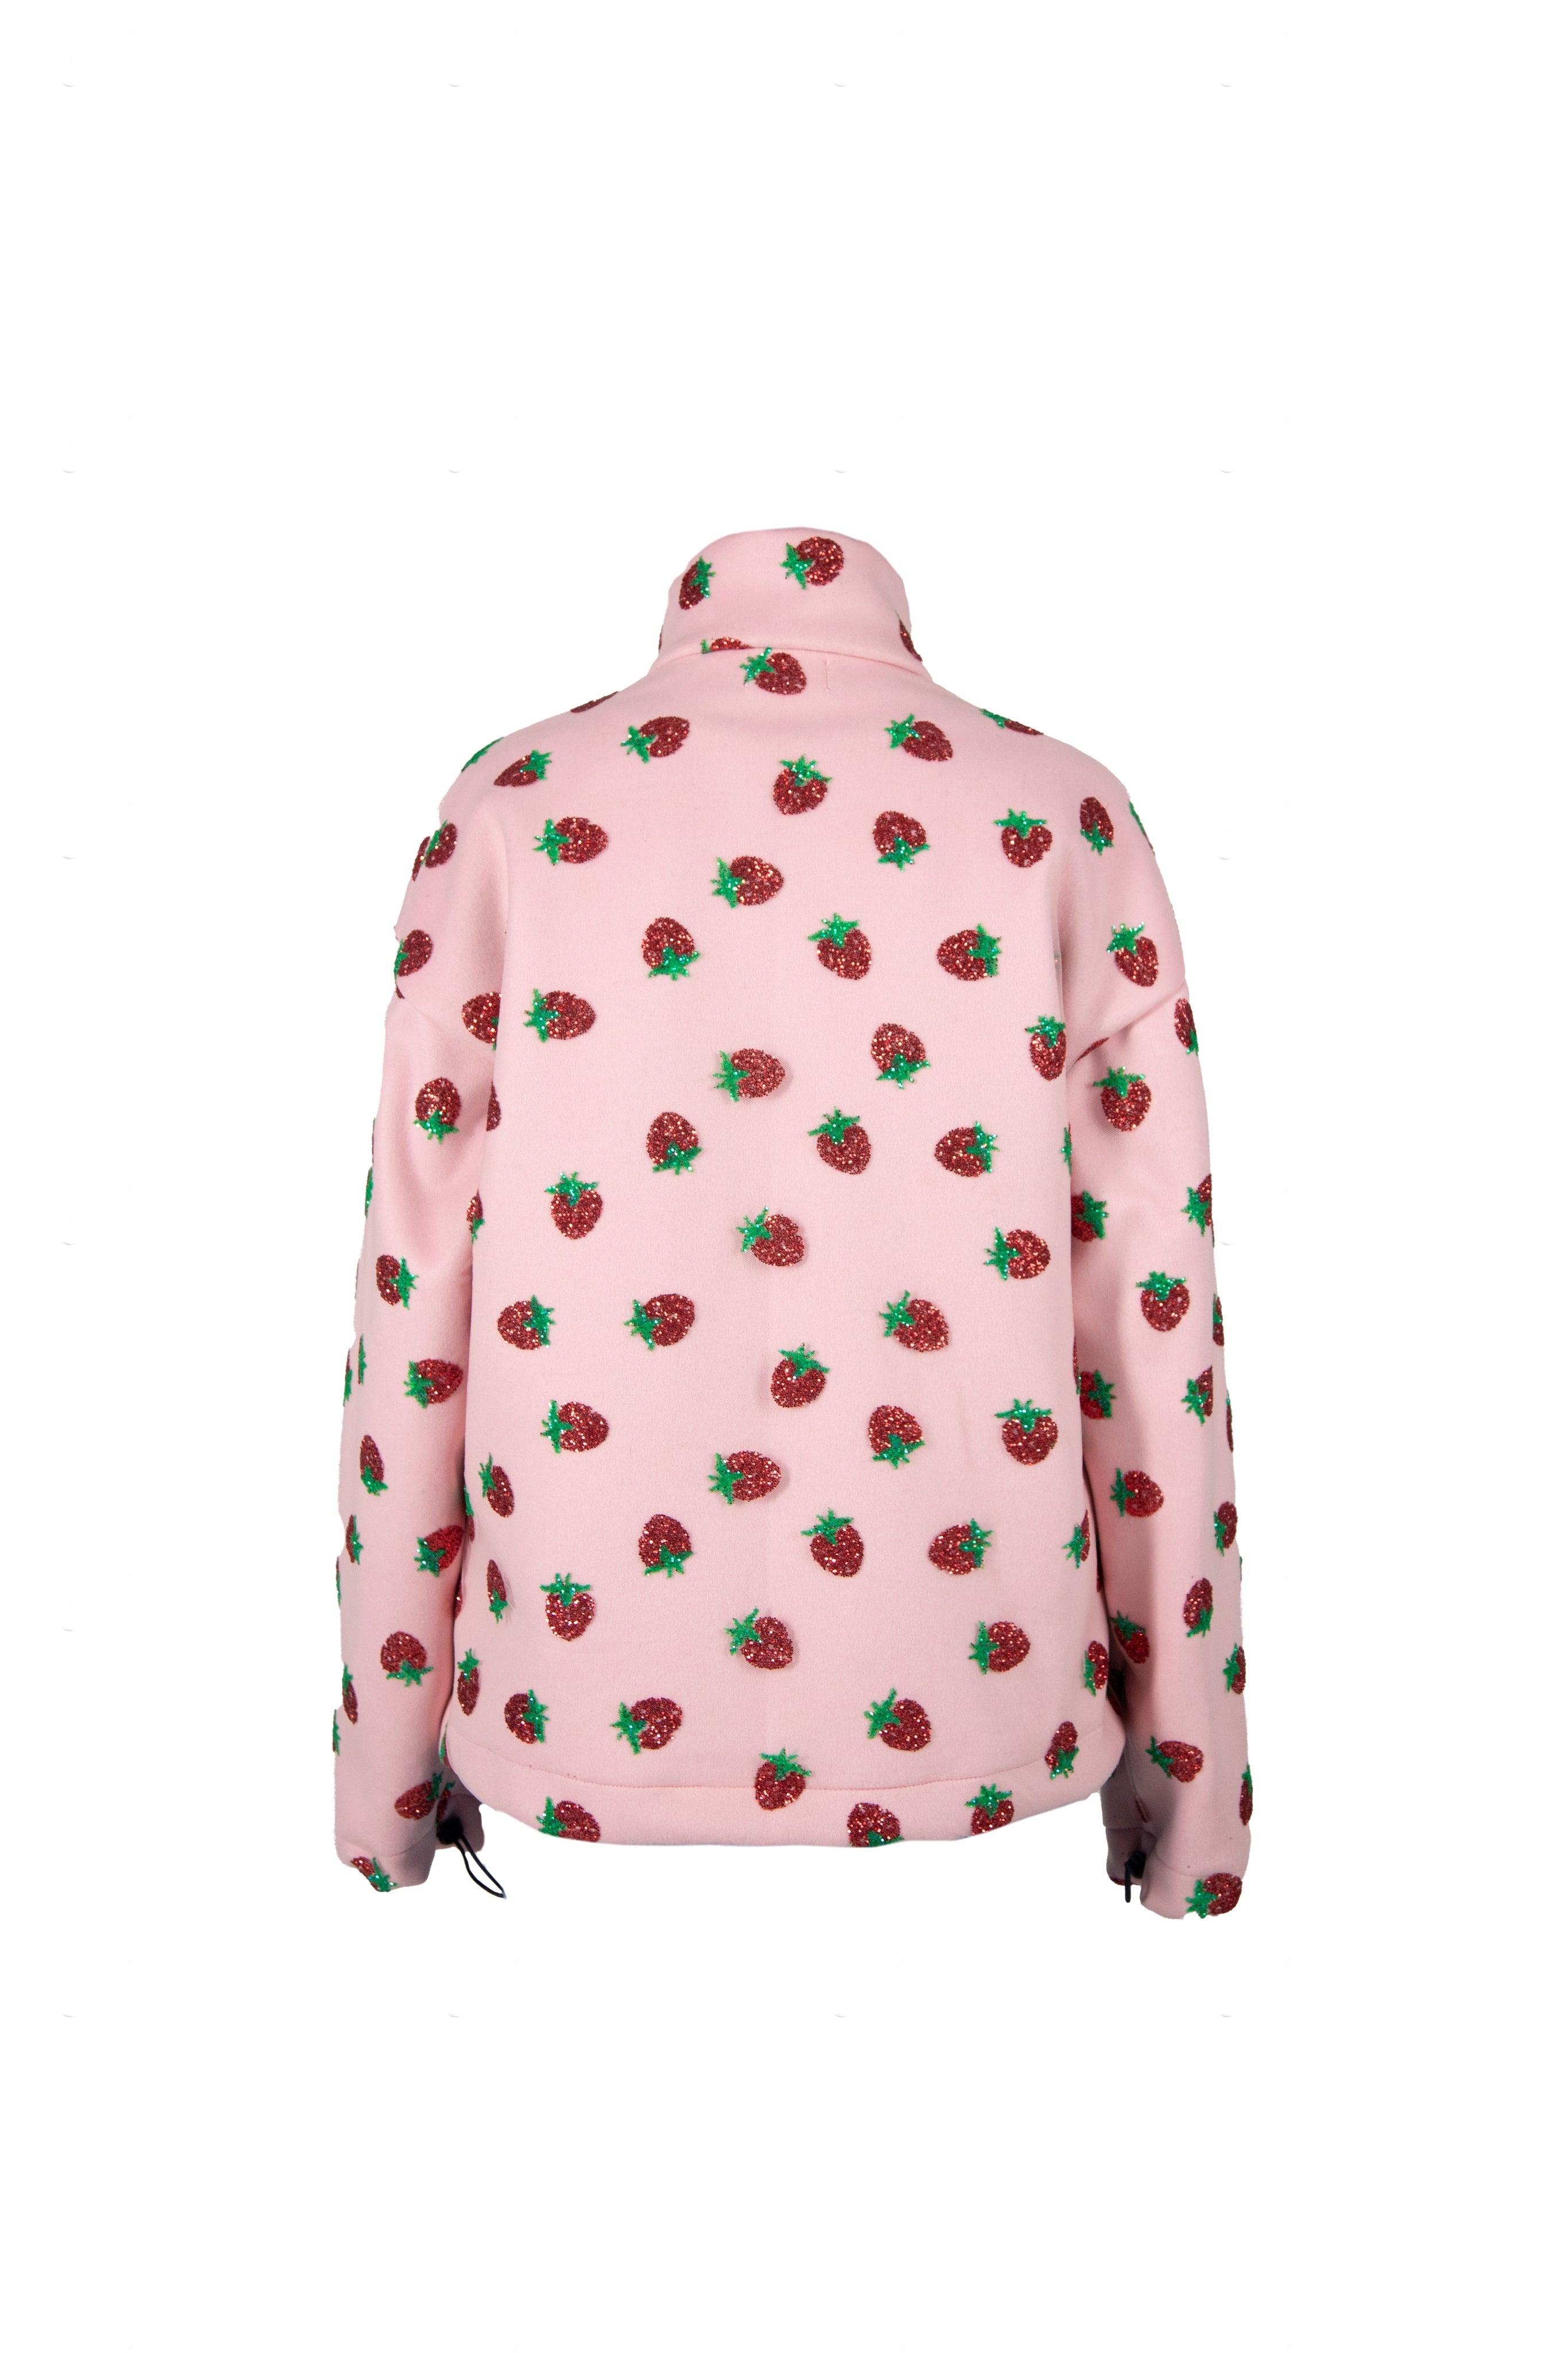 Strawberry Wool Jacket – Lirika Matoshi